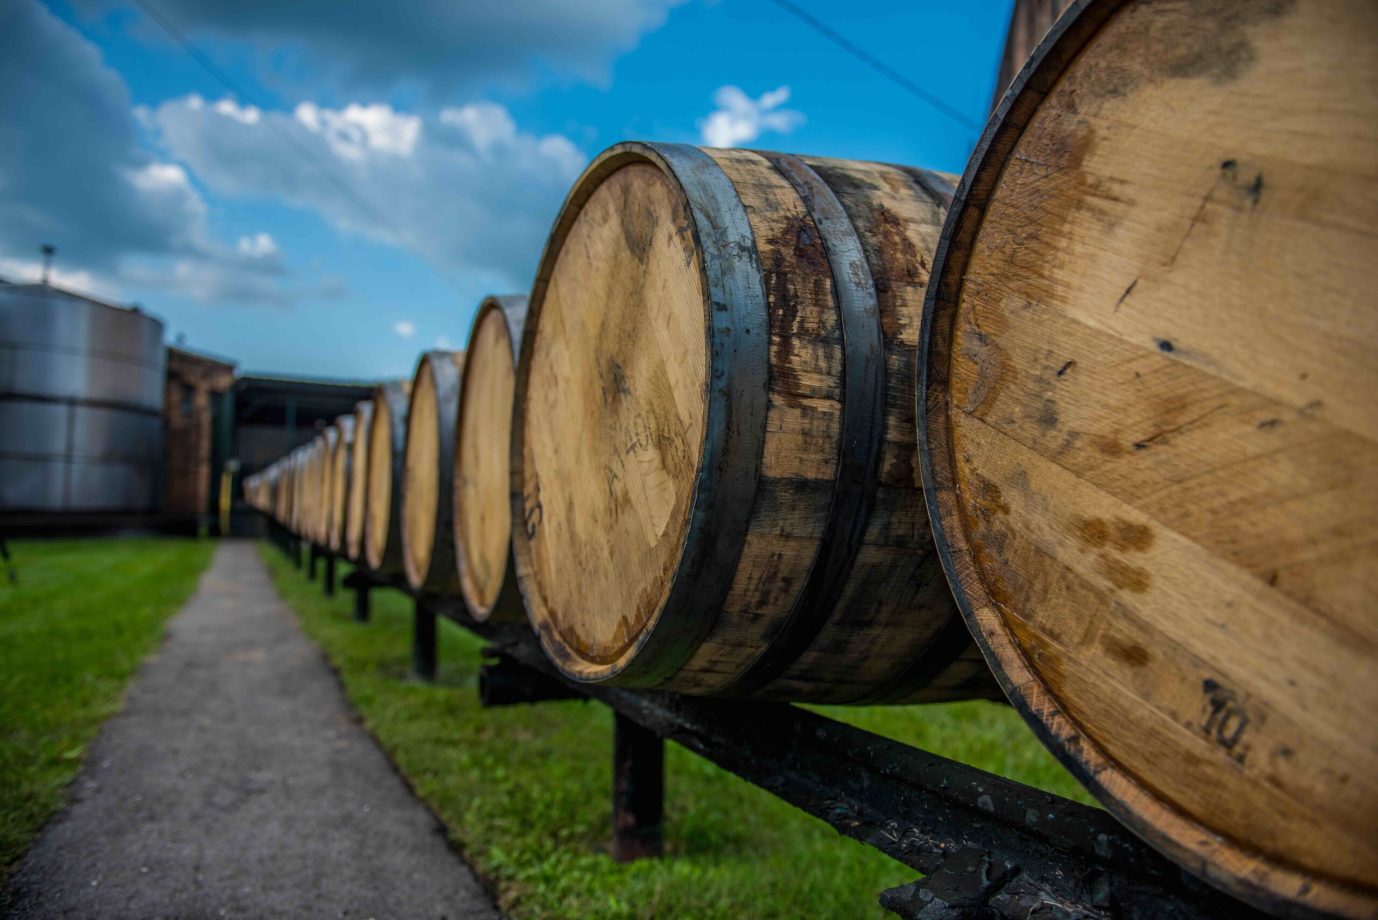 Bourbon barrels at a distillery along the Bourbon Trail in Kentucky